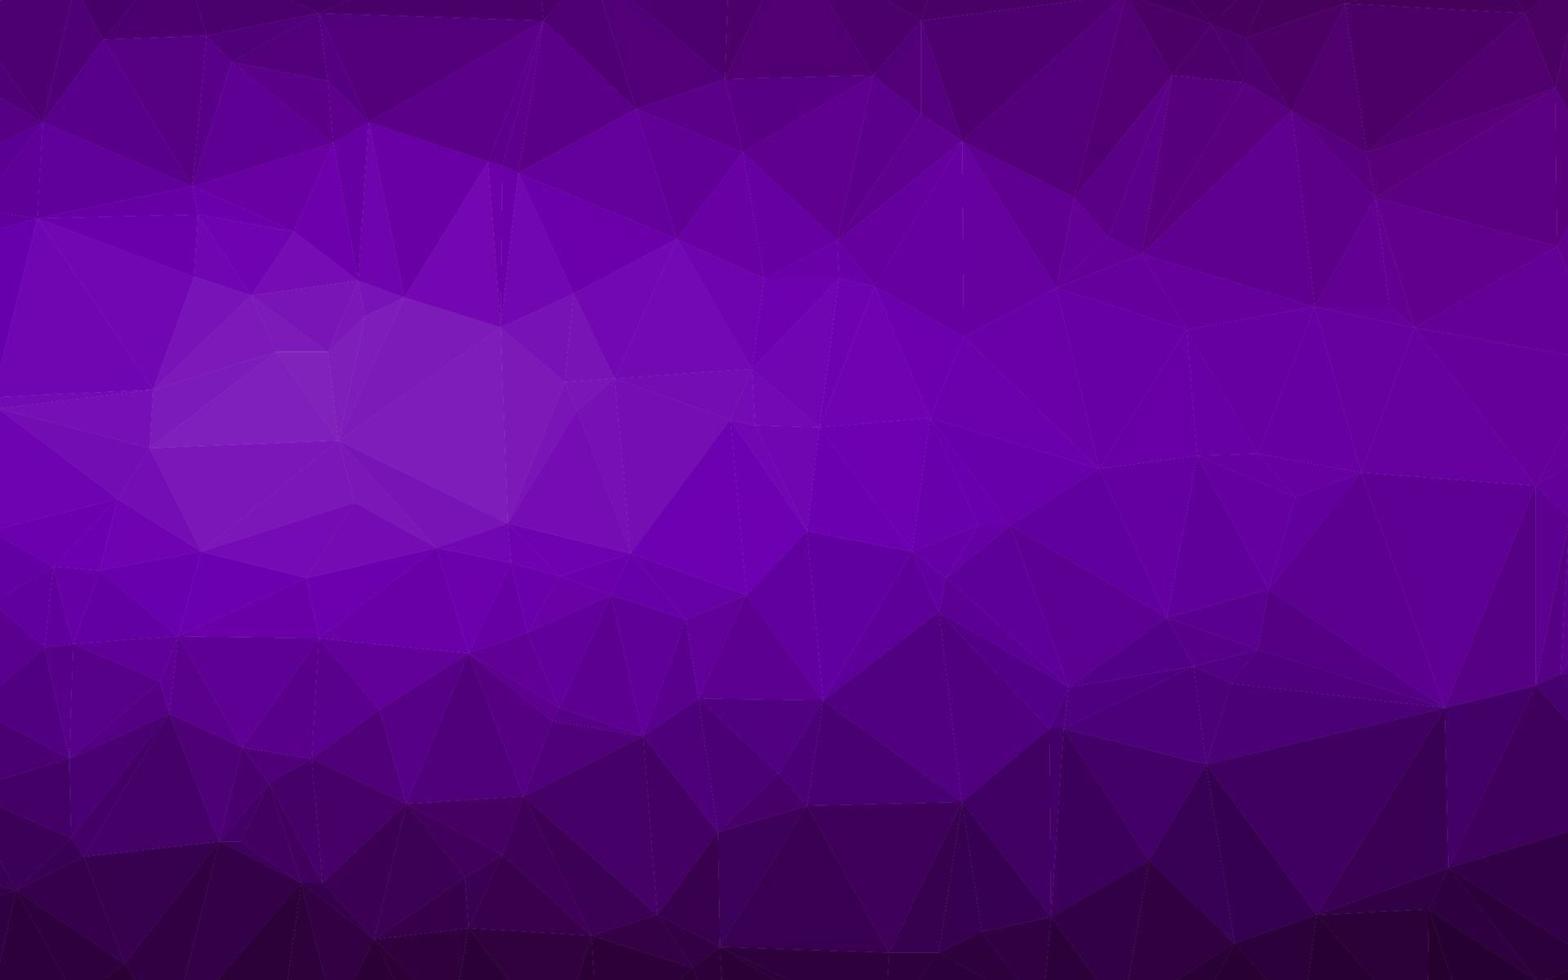 Fondo poligonal de vector púrpura oscuro.